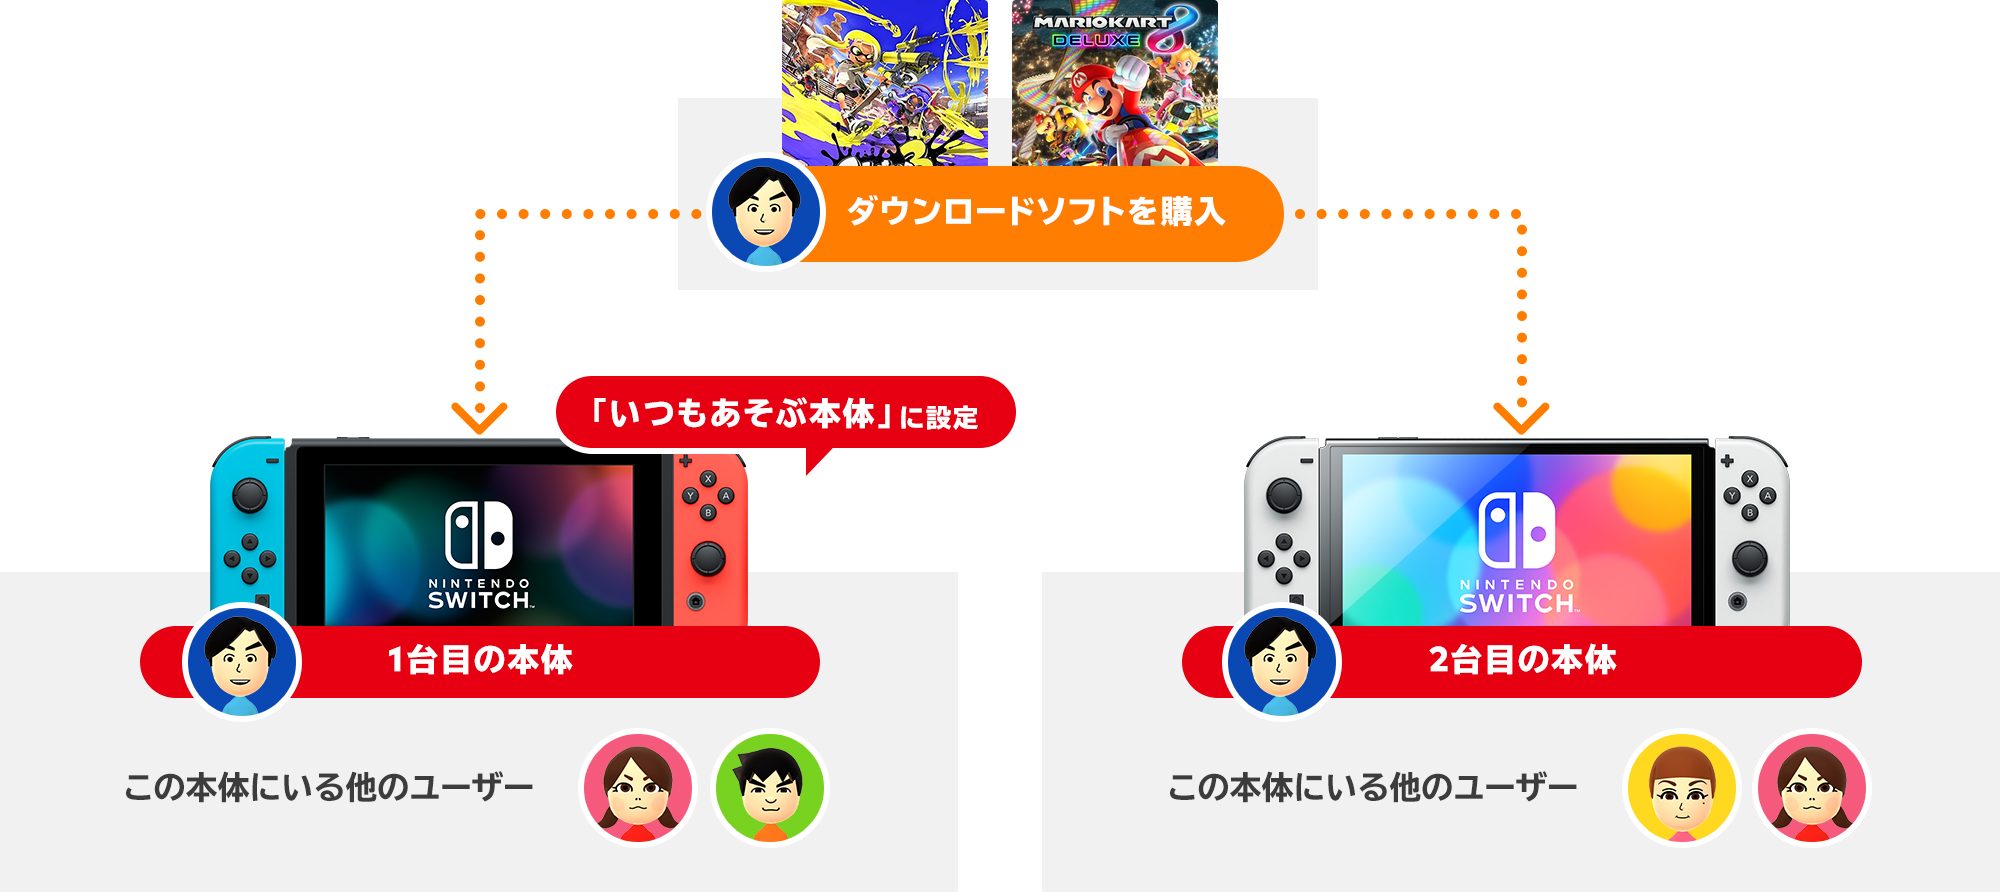 2台目本体の購入後にやること Nintendo Switch サポート情報 Nintendo